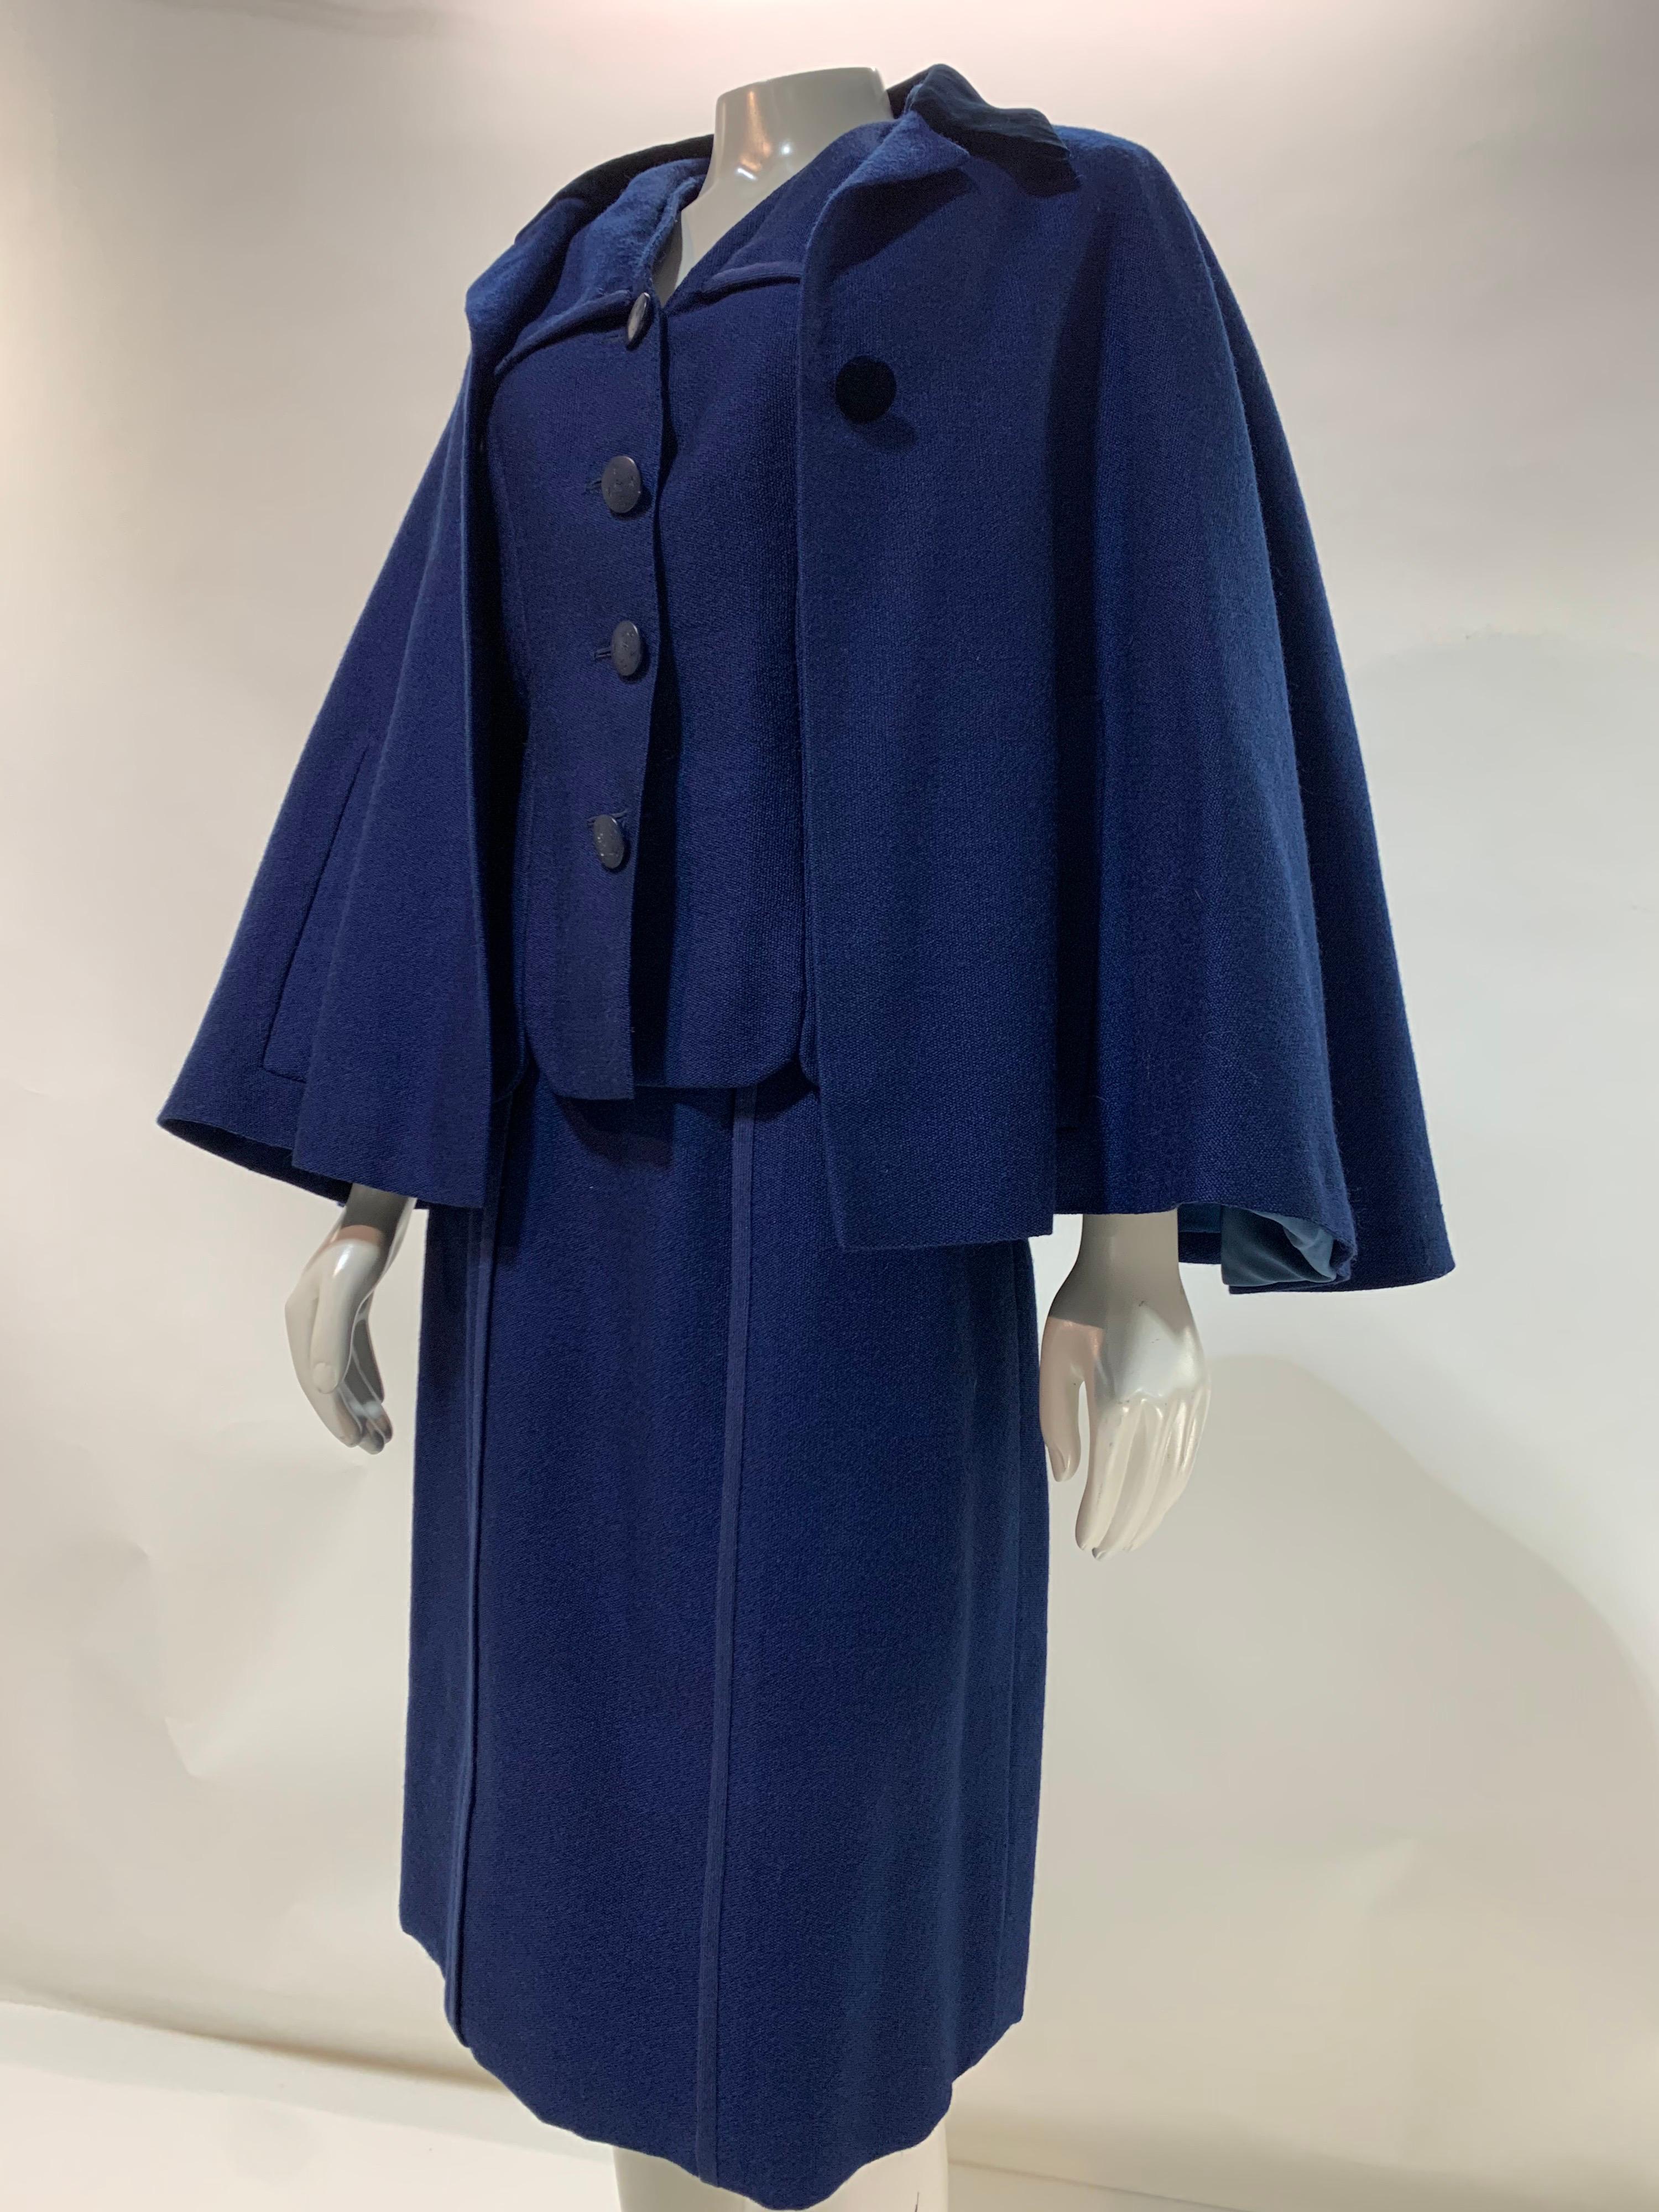 Ein wunderschön geschneiderter 1940er Creed of London Couture 3-teiliger königsblauer Wollrockanzug mit Caplet. Mit Seidenkrepp gefüttert und fabelhaften beschrifteten Knöpfen. Caplet hat einen mitternachtsblauen Samtkragen im Chesterfield-Stil.